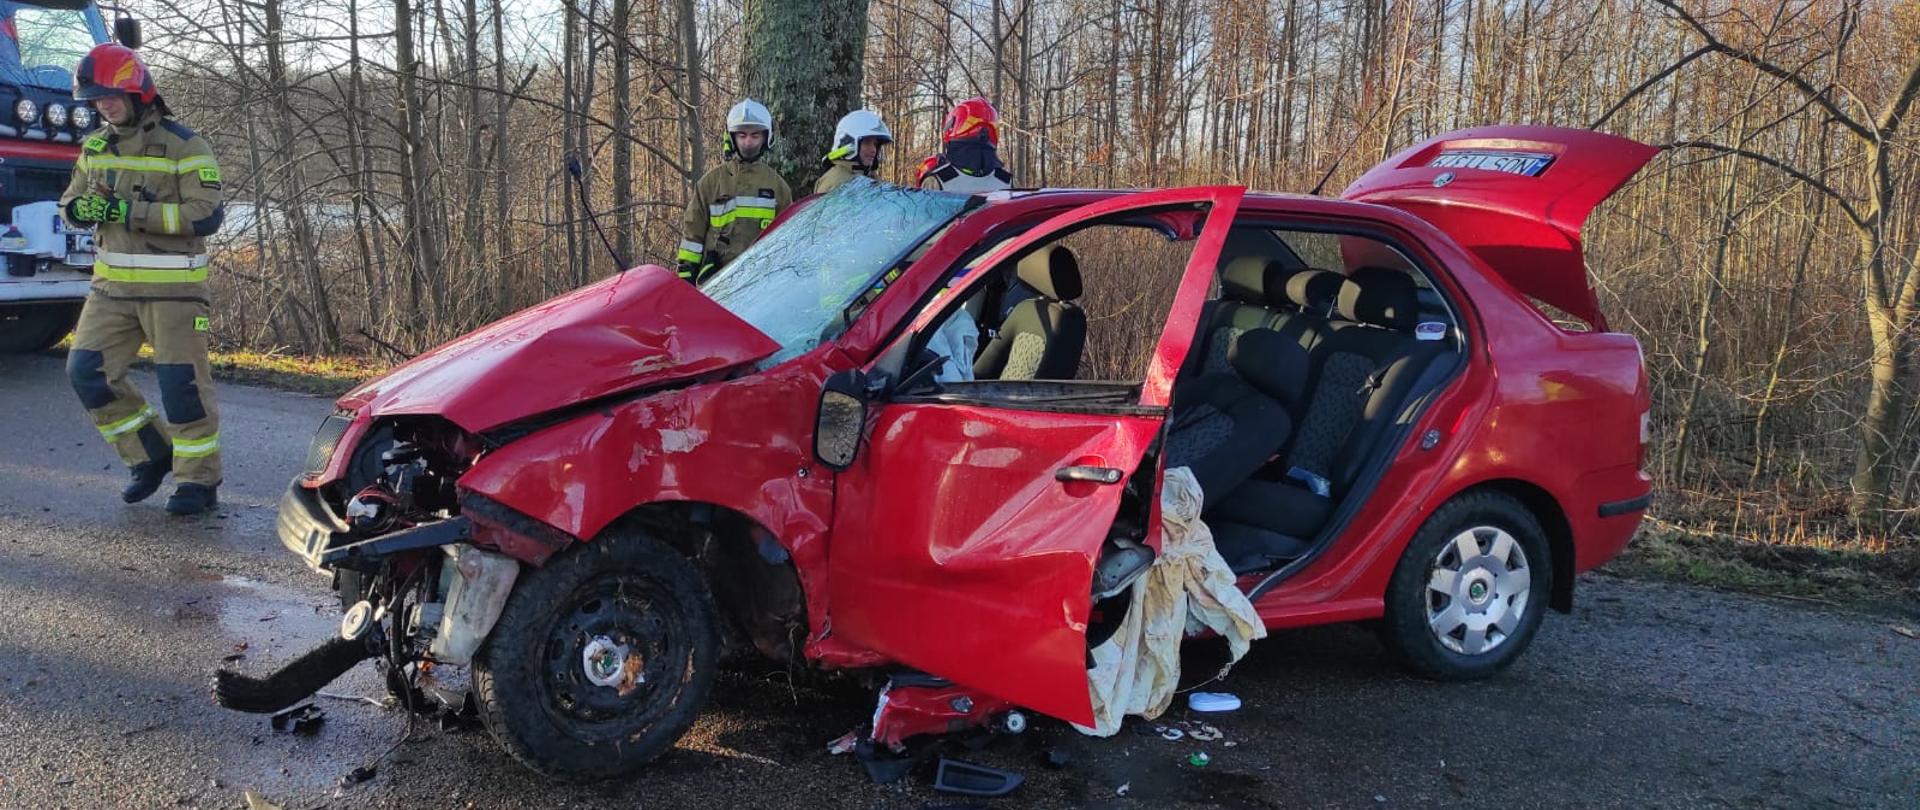 Czerwone auto osobowe, rozbite, uszkodzone po uderzeniu w drzewo, otwarte drzwi i bagażnik. Przy nim strażacy.